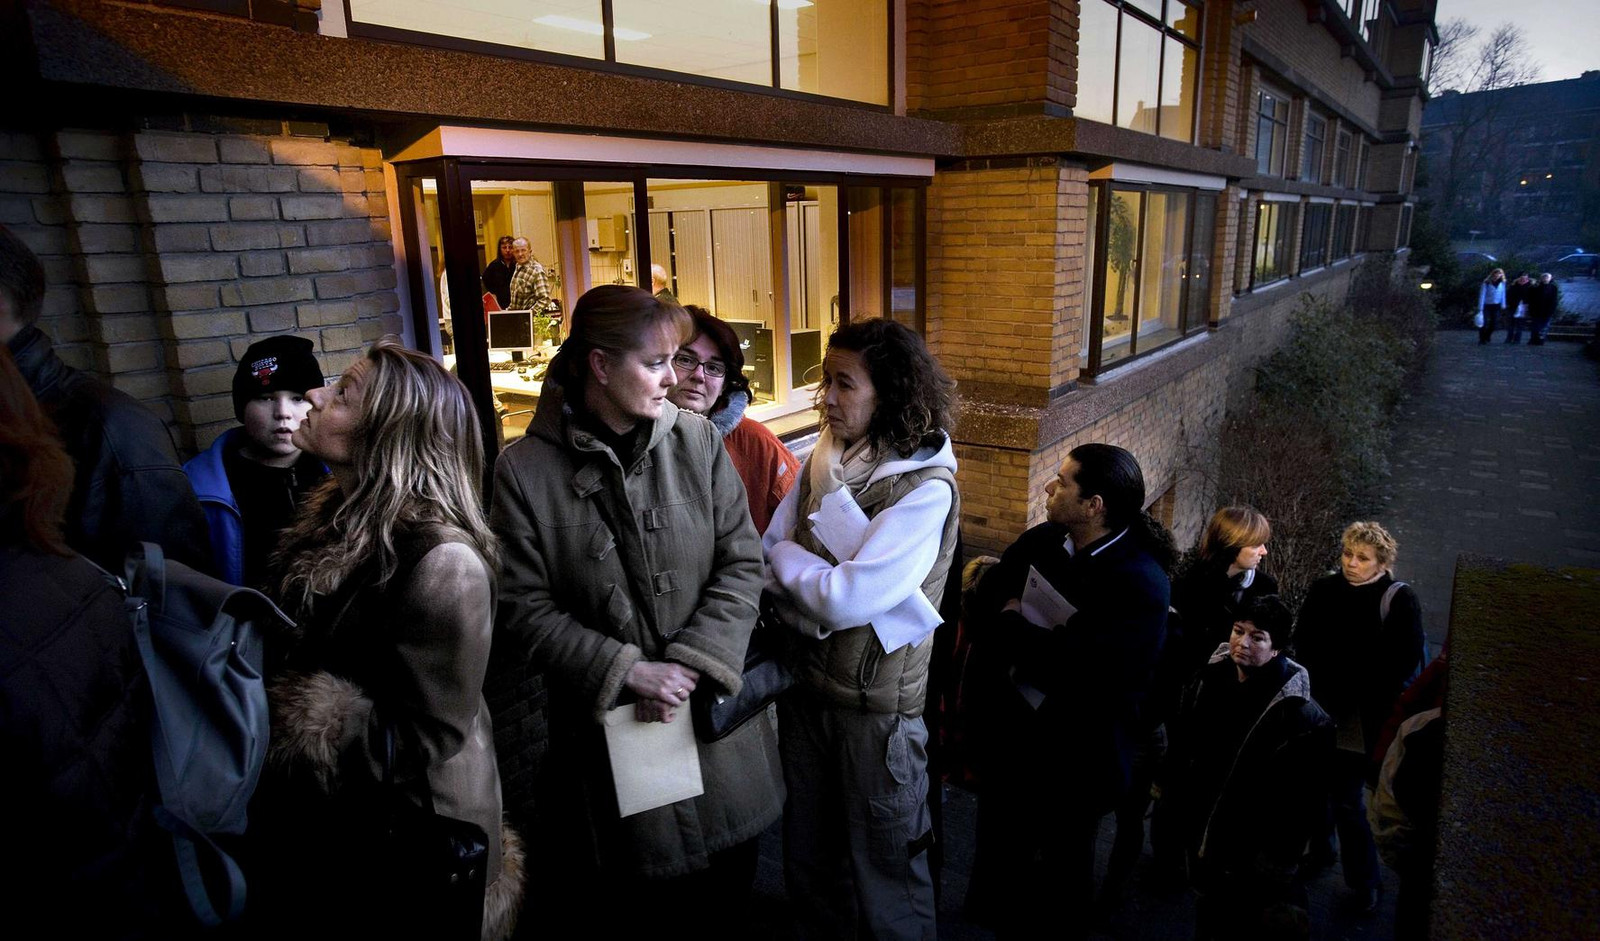 Ouders staan in de rij om hun kind in te schrijven als brugklasleerling van het Dalton College in Den Haag. Beeld Martijn Beekman